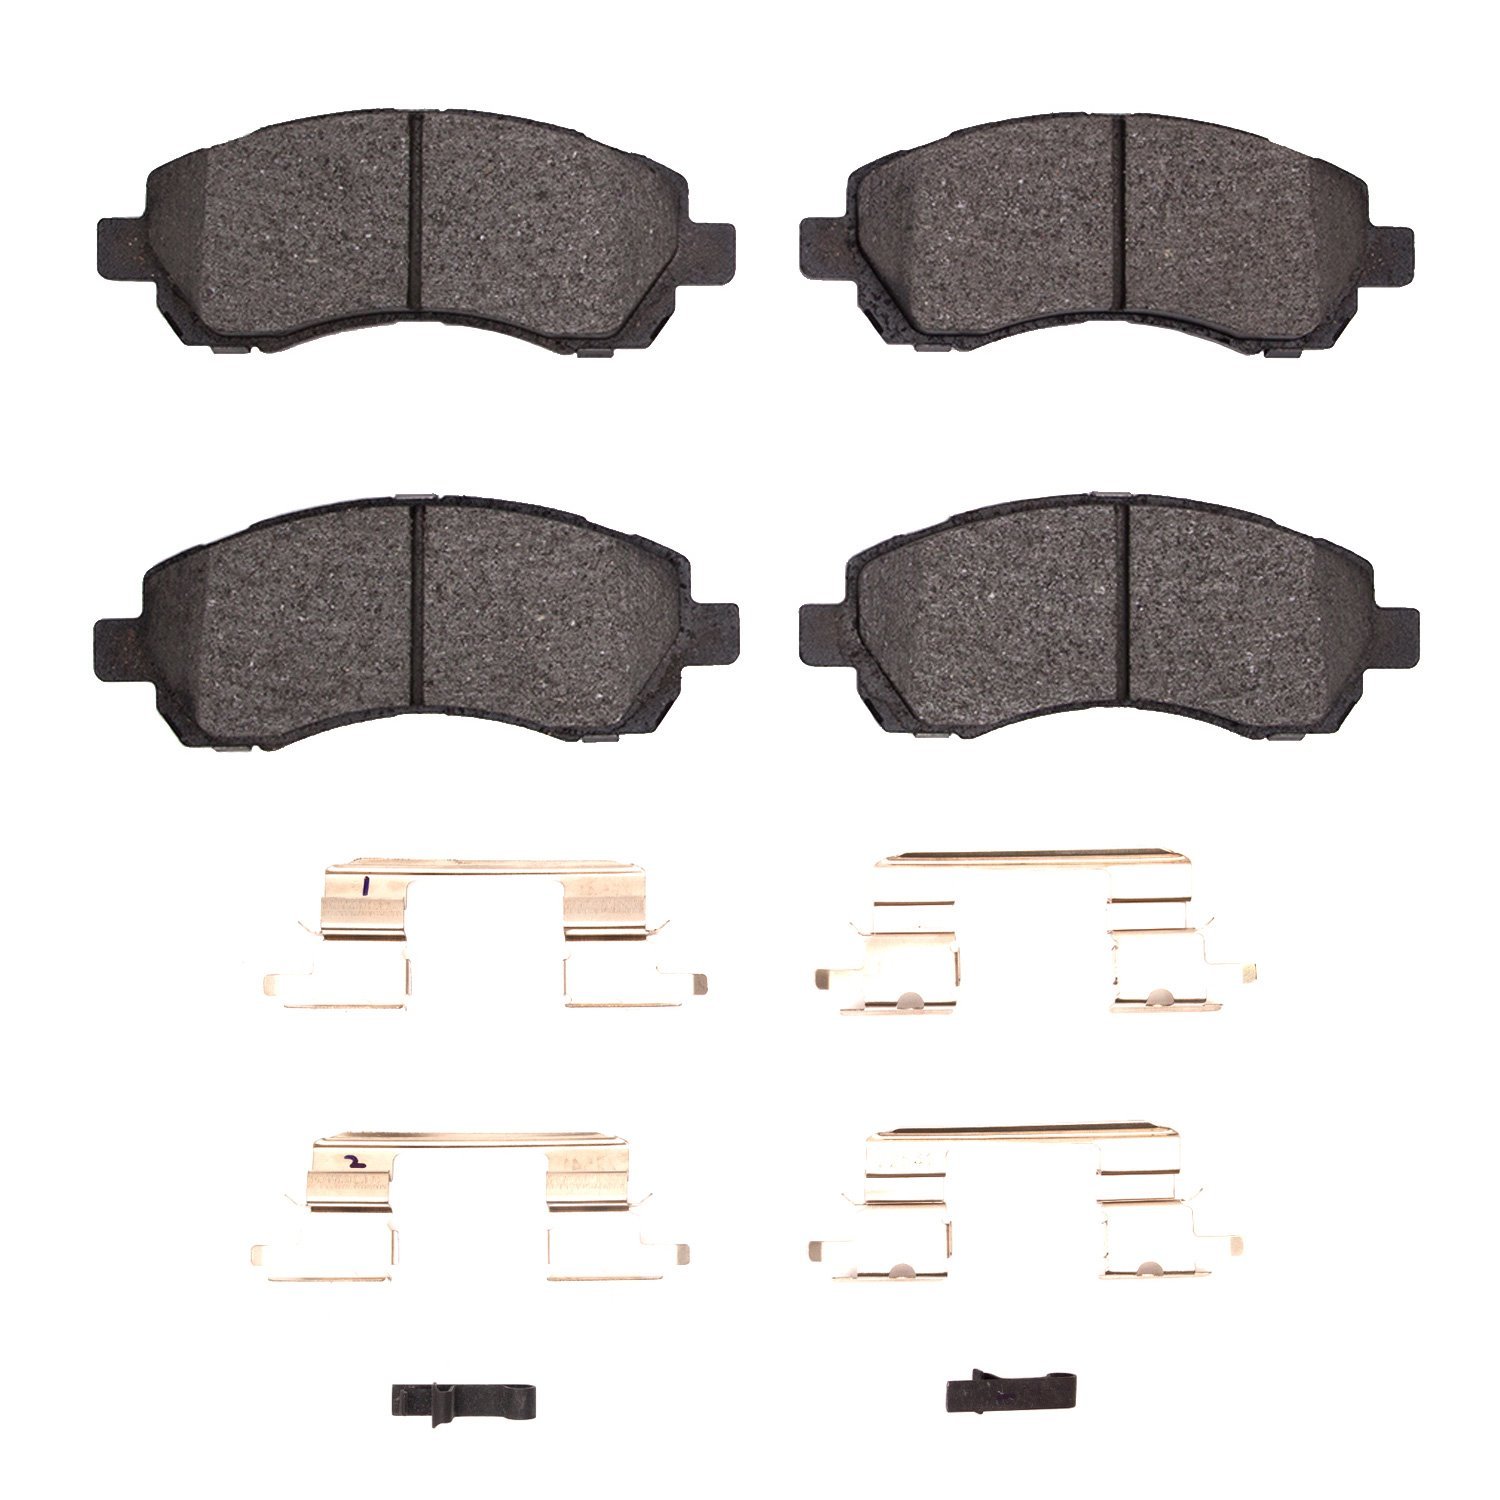 1310-0722-01 3000-Series Ceramic Brake Pads & Hardware Kit, 1997-2001 Subaru, Position: Front